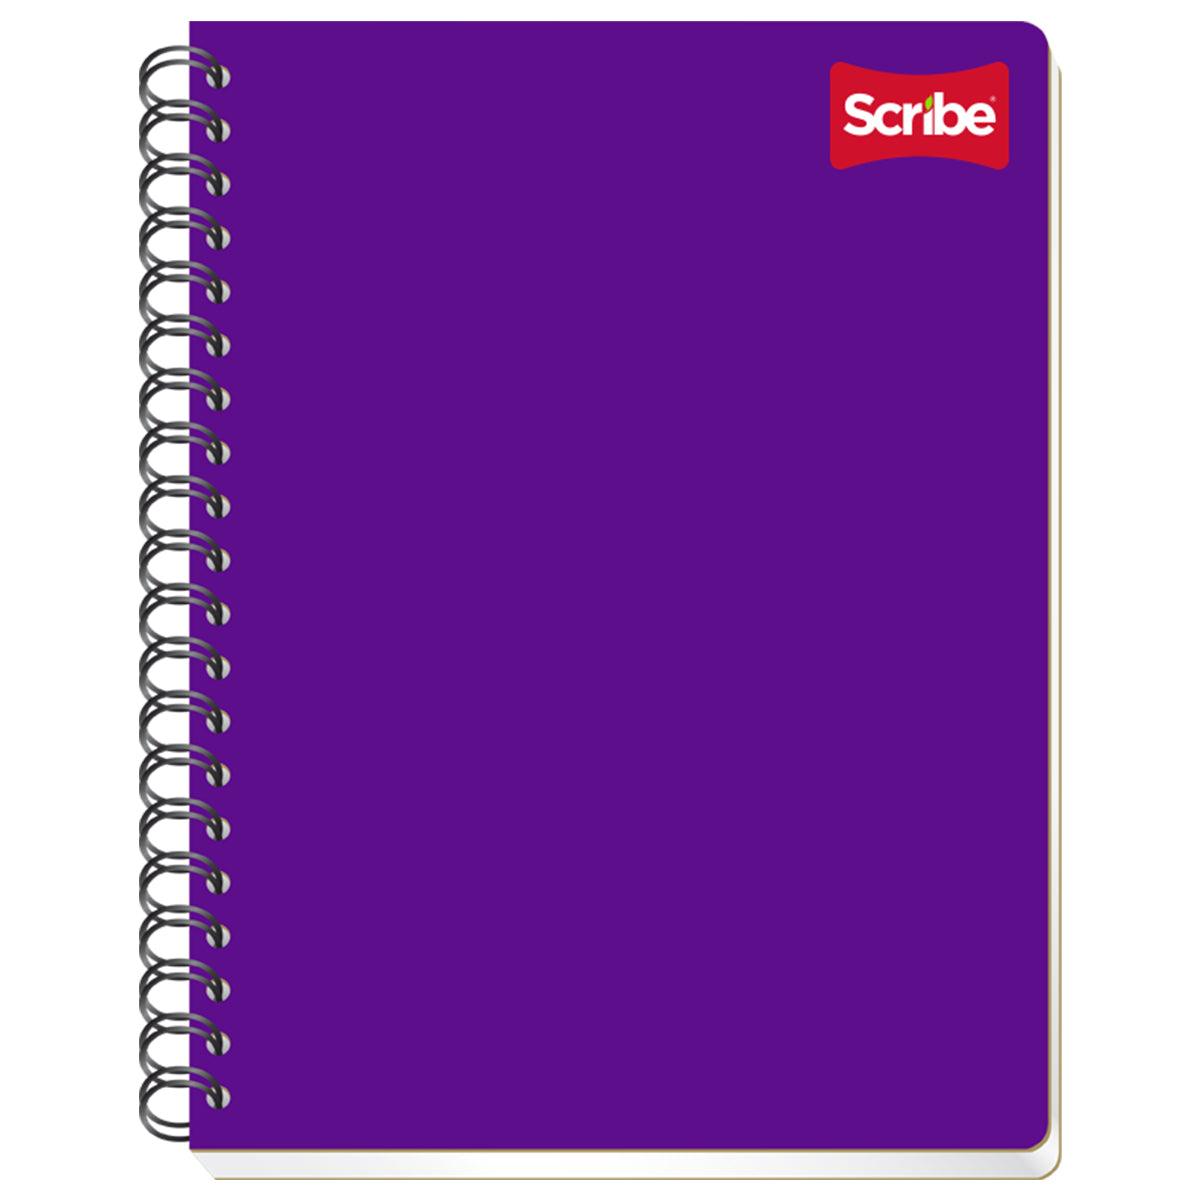 Cuaderno profesional Scribe clásico raya S2900 - Colmenero Shop